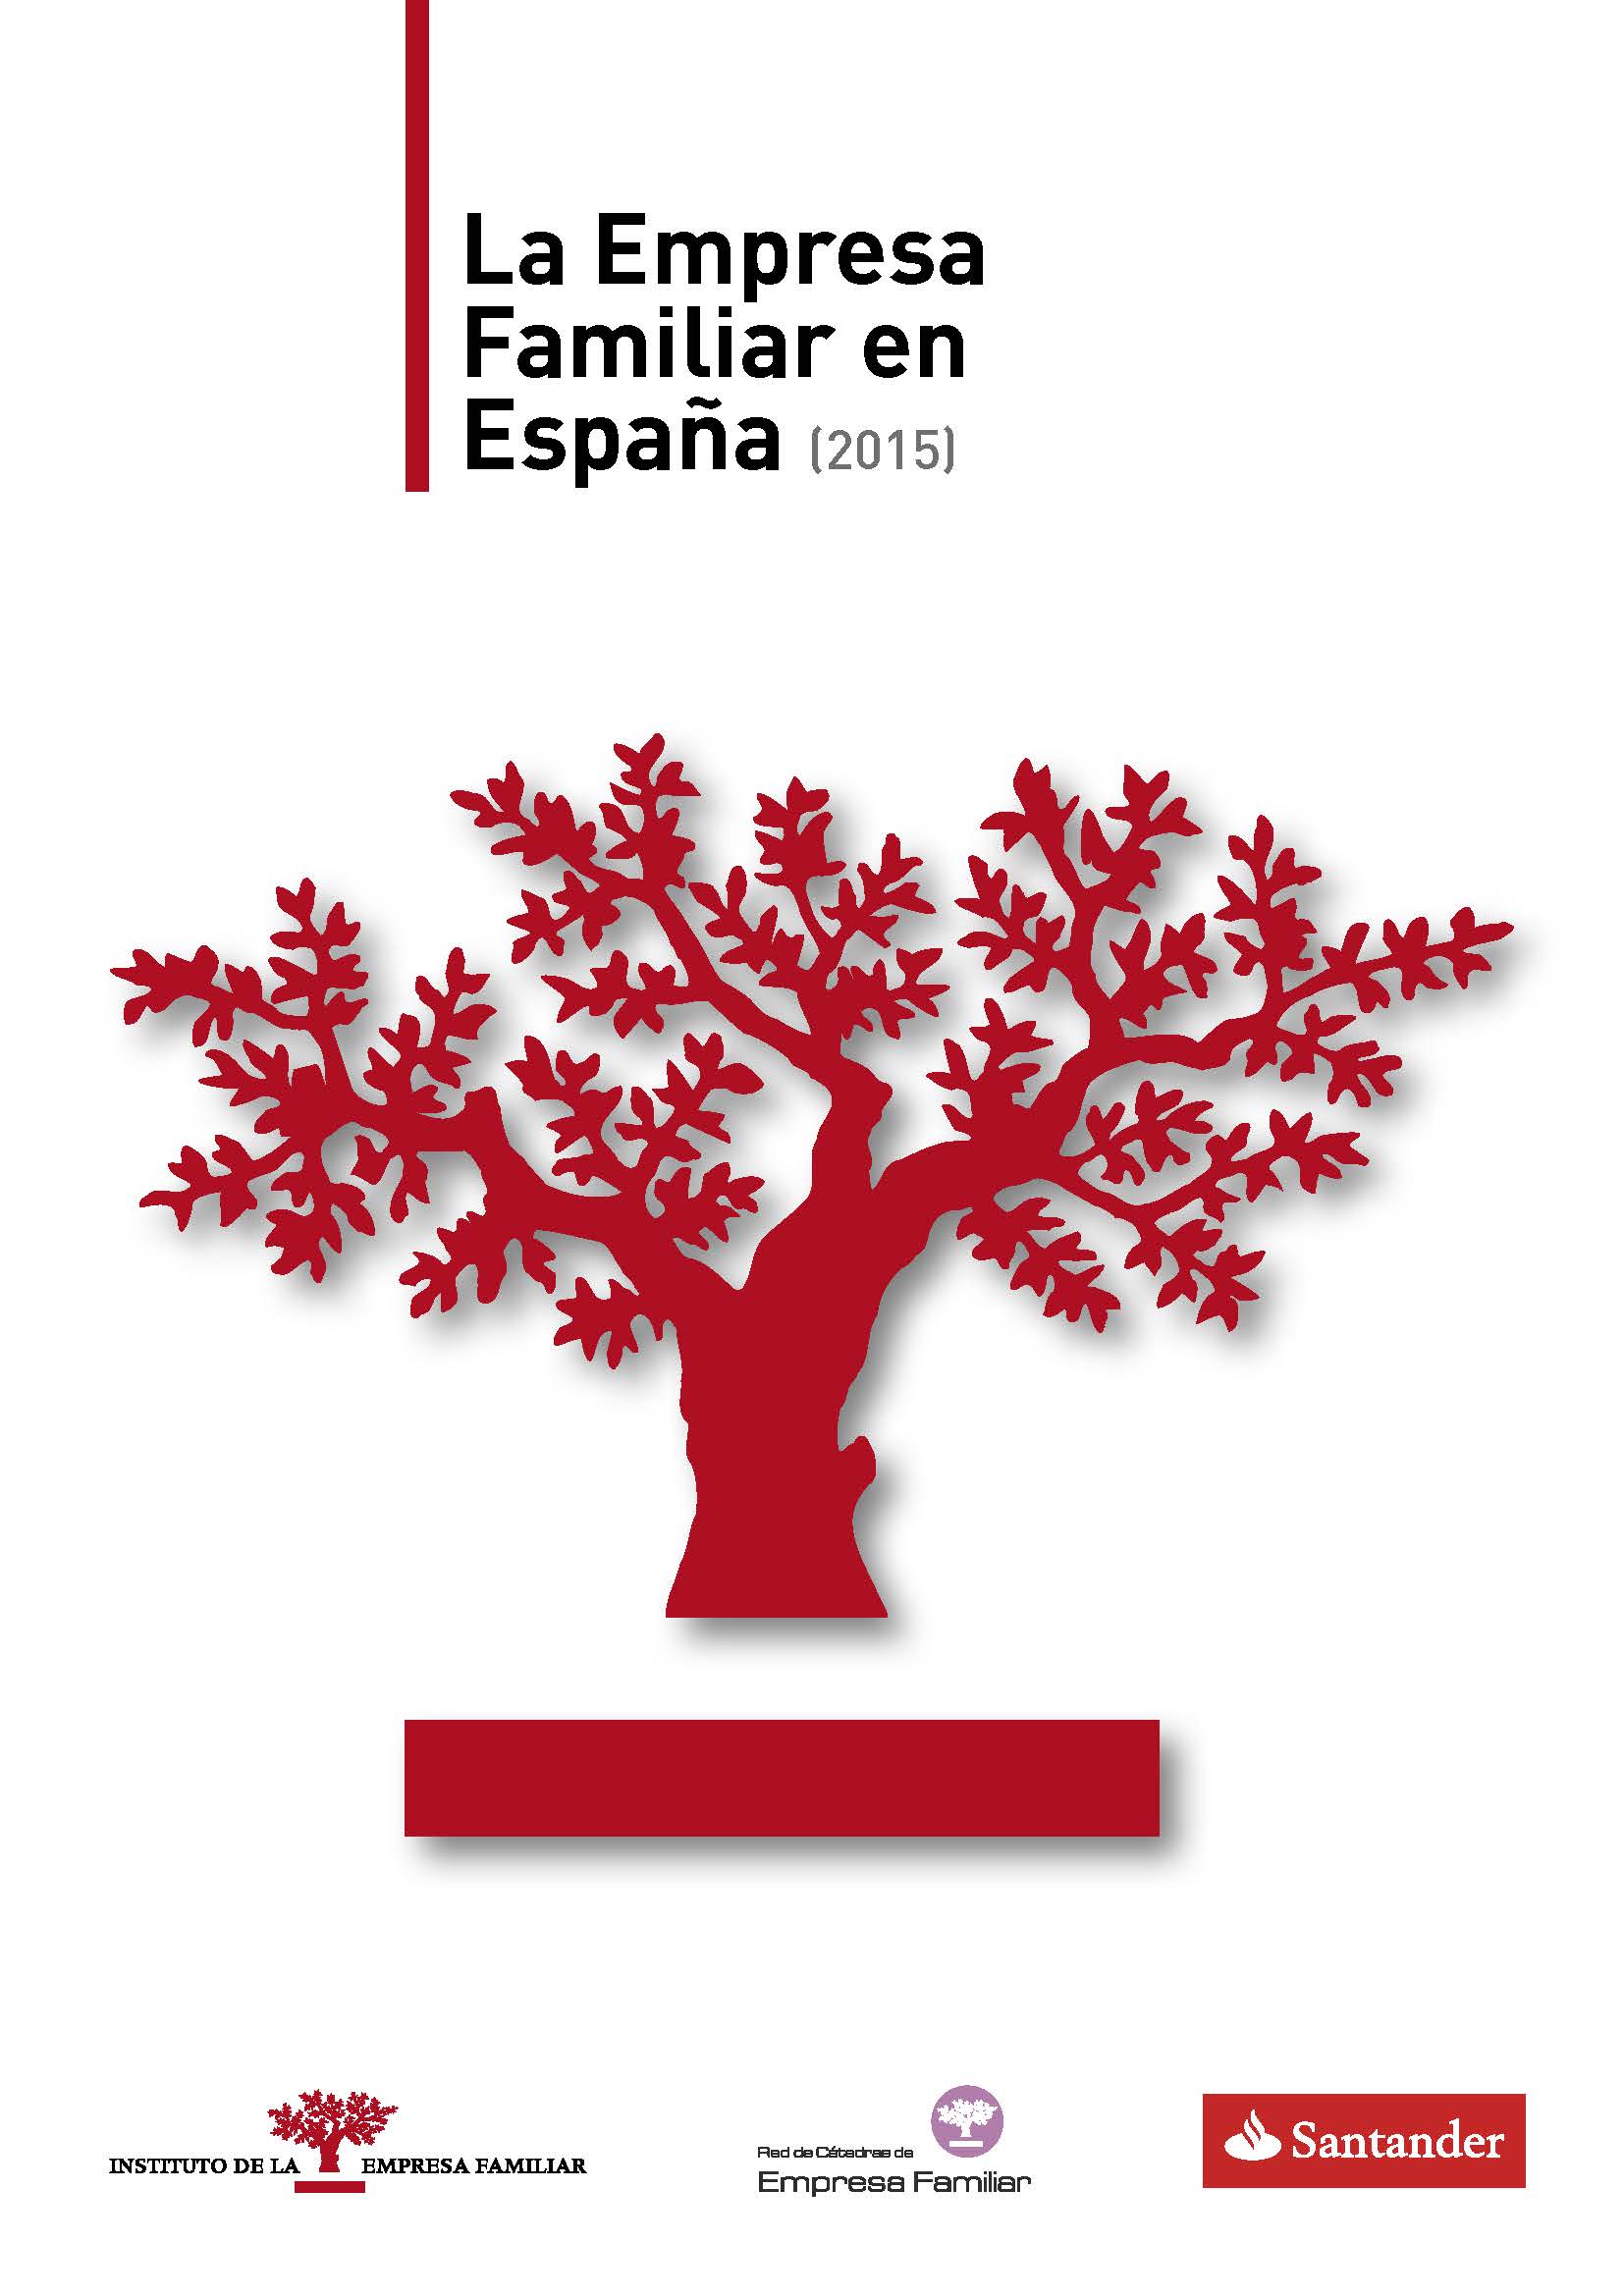 La Empresa Familiar en España